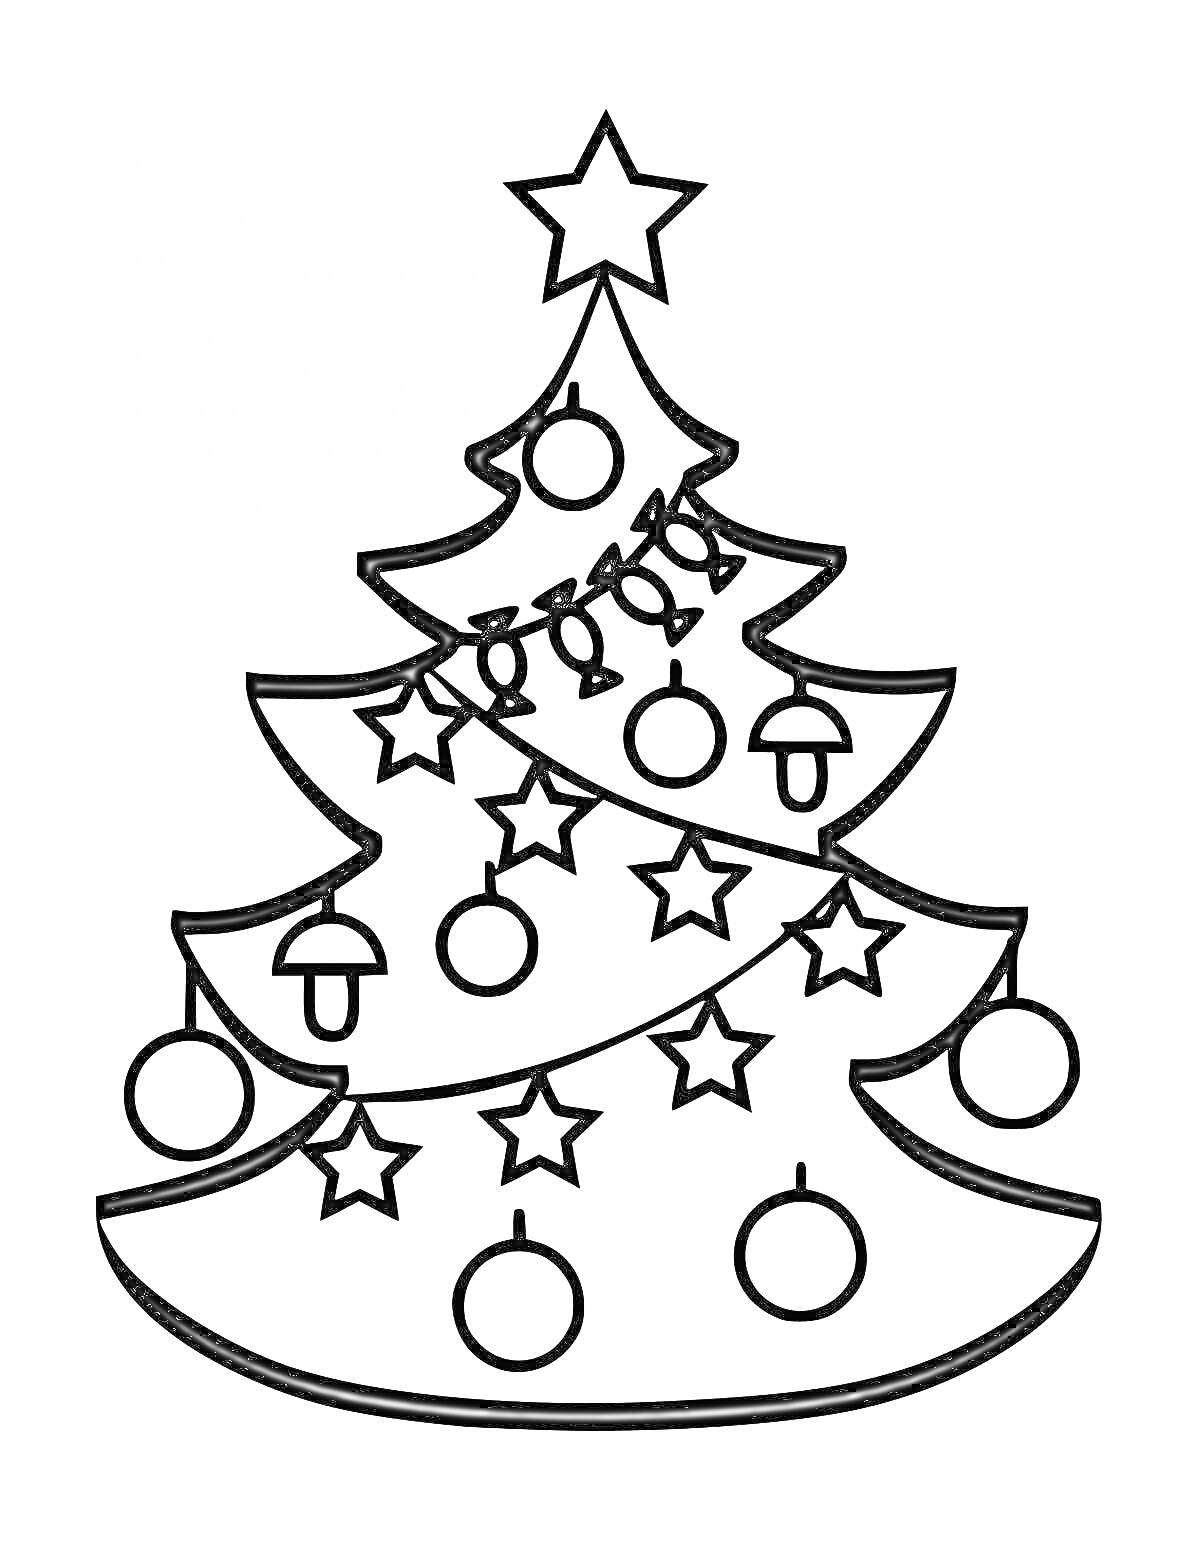 Раскраска Елка с звездой на макушке, украшенная гирляндой из лампочек, круглыми шарами и звездами